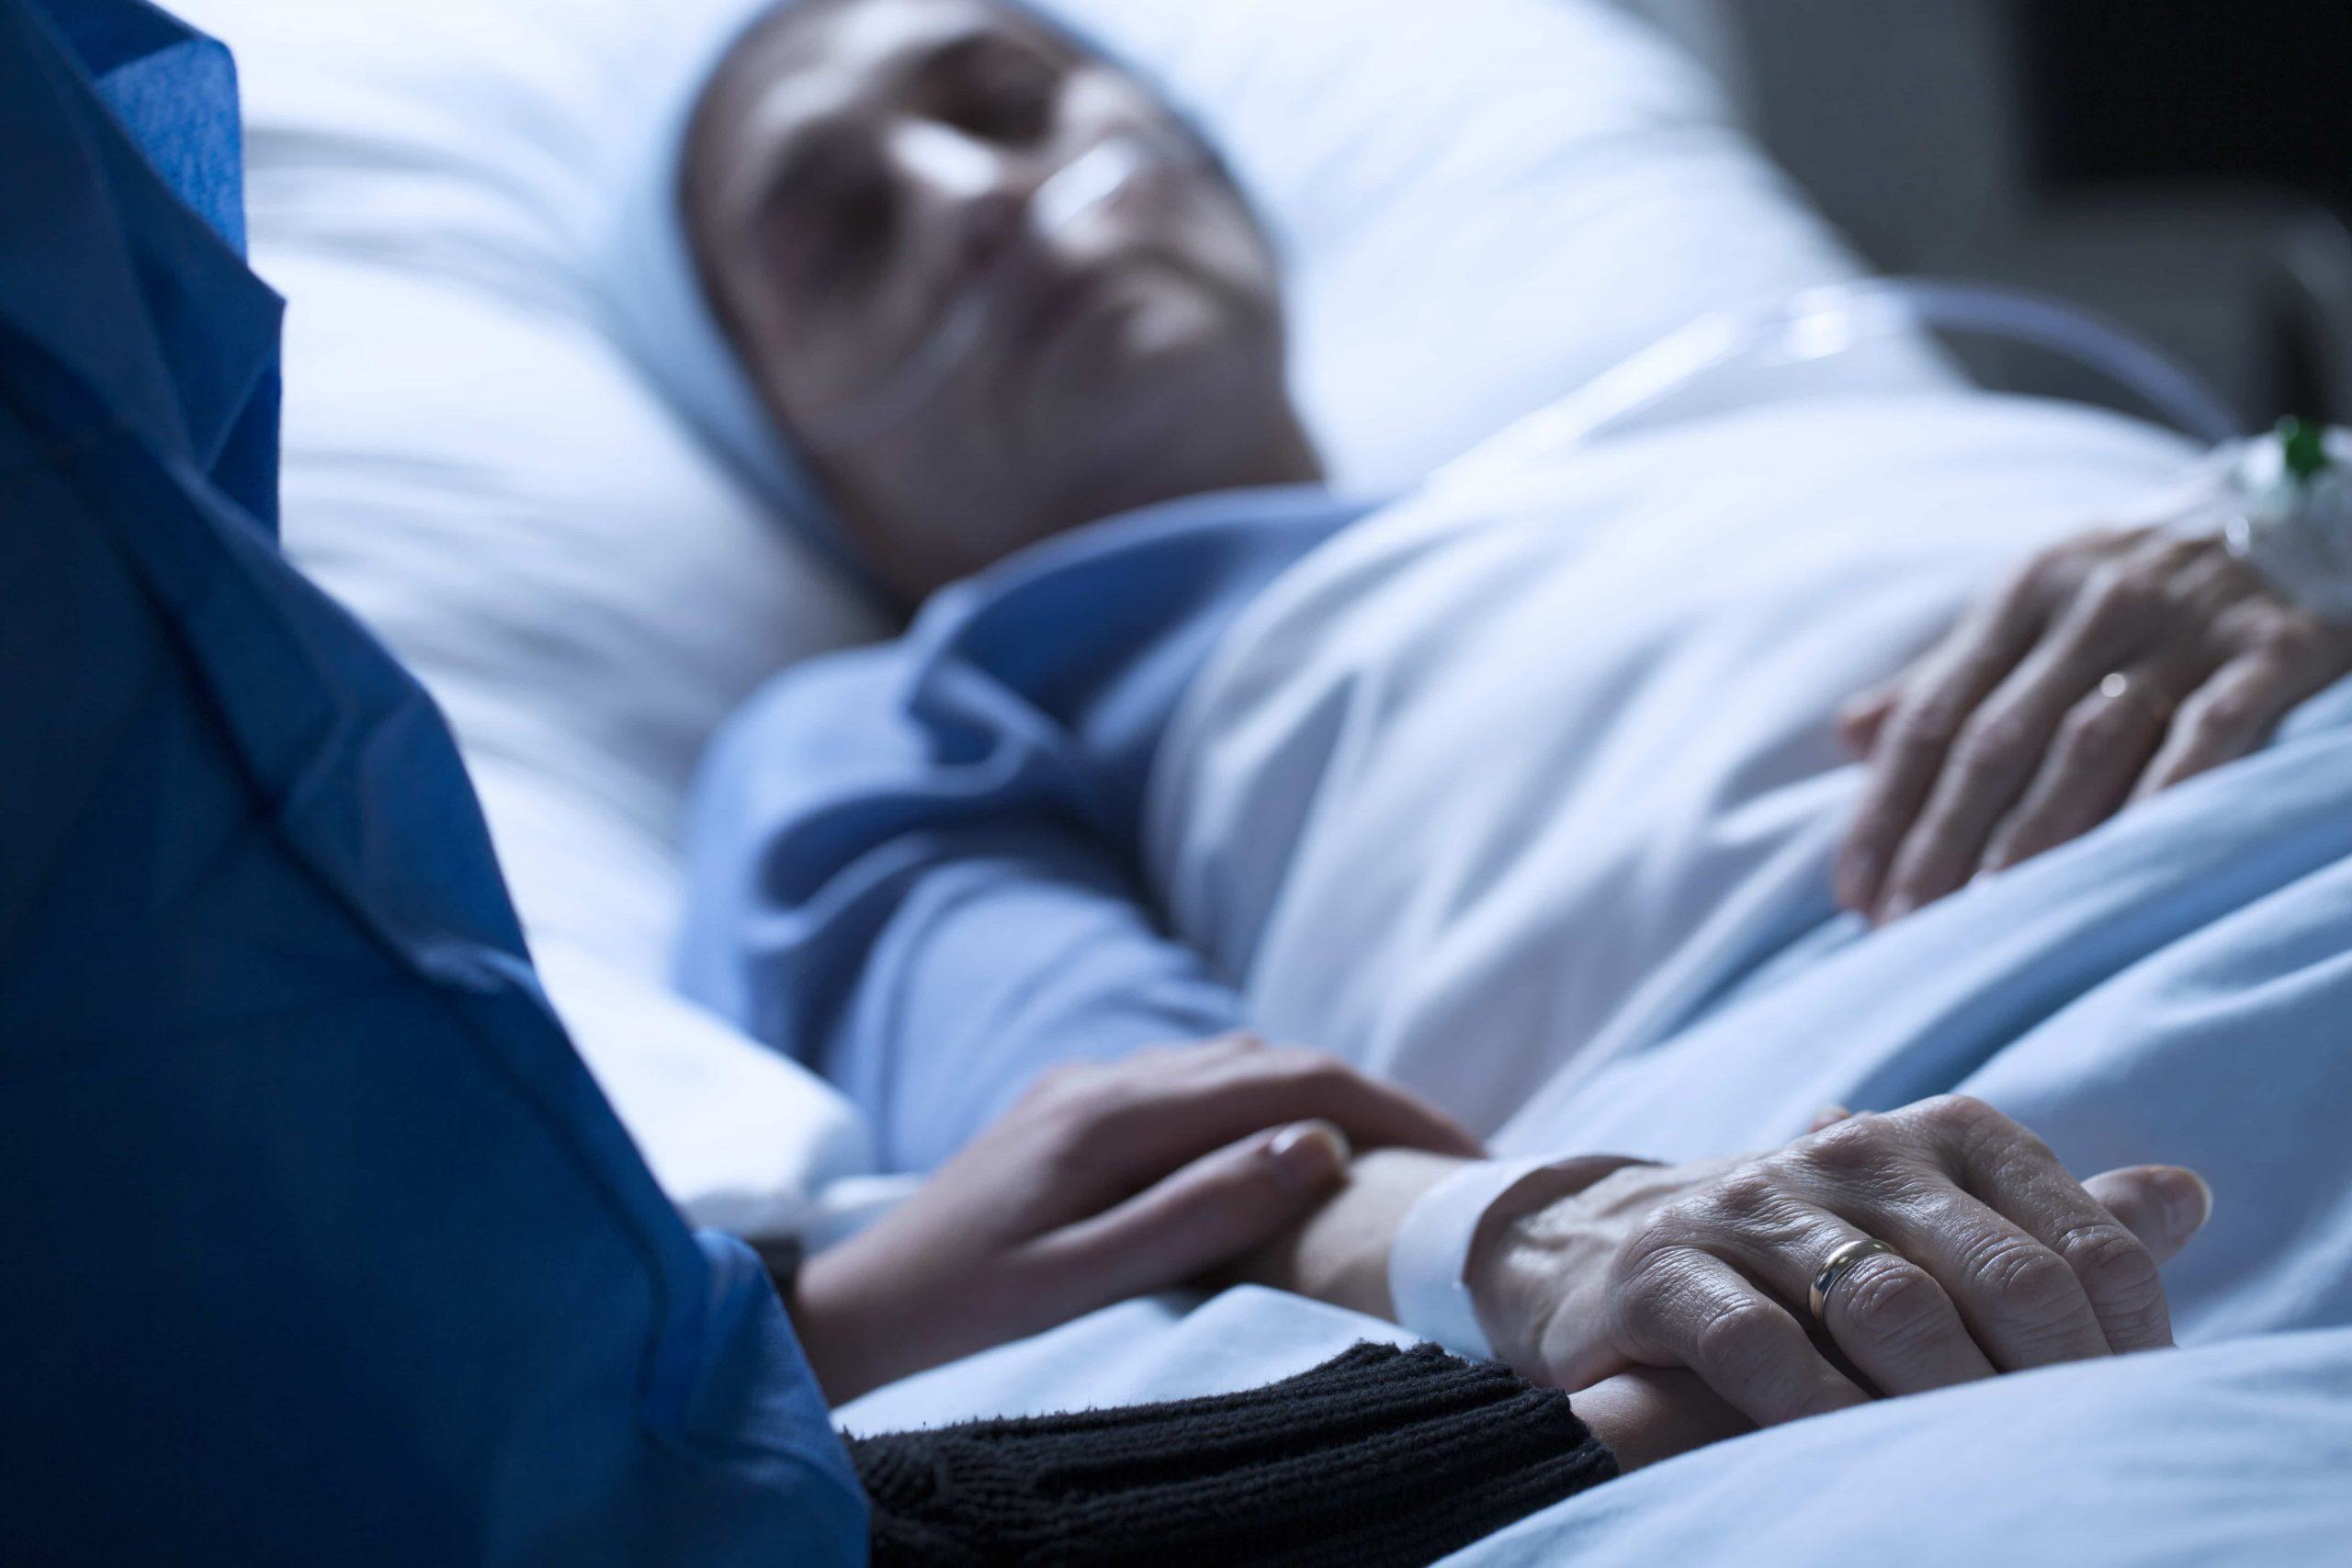 Engels ziekenhuis wil organen oogsten van Pool in coma